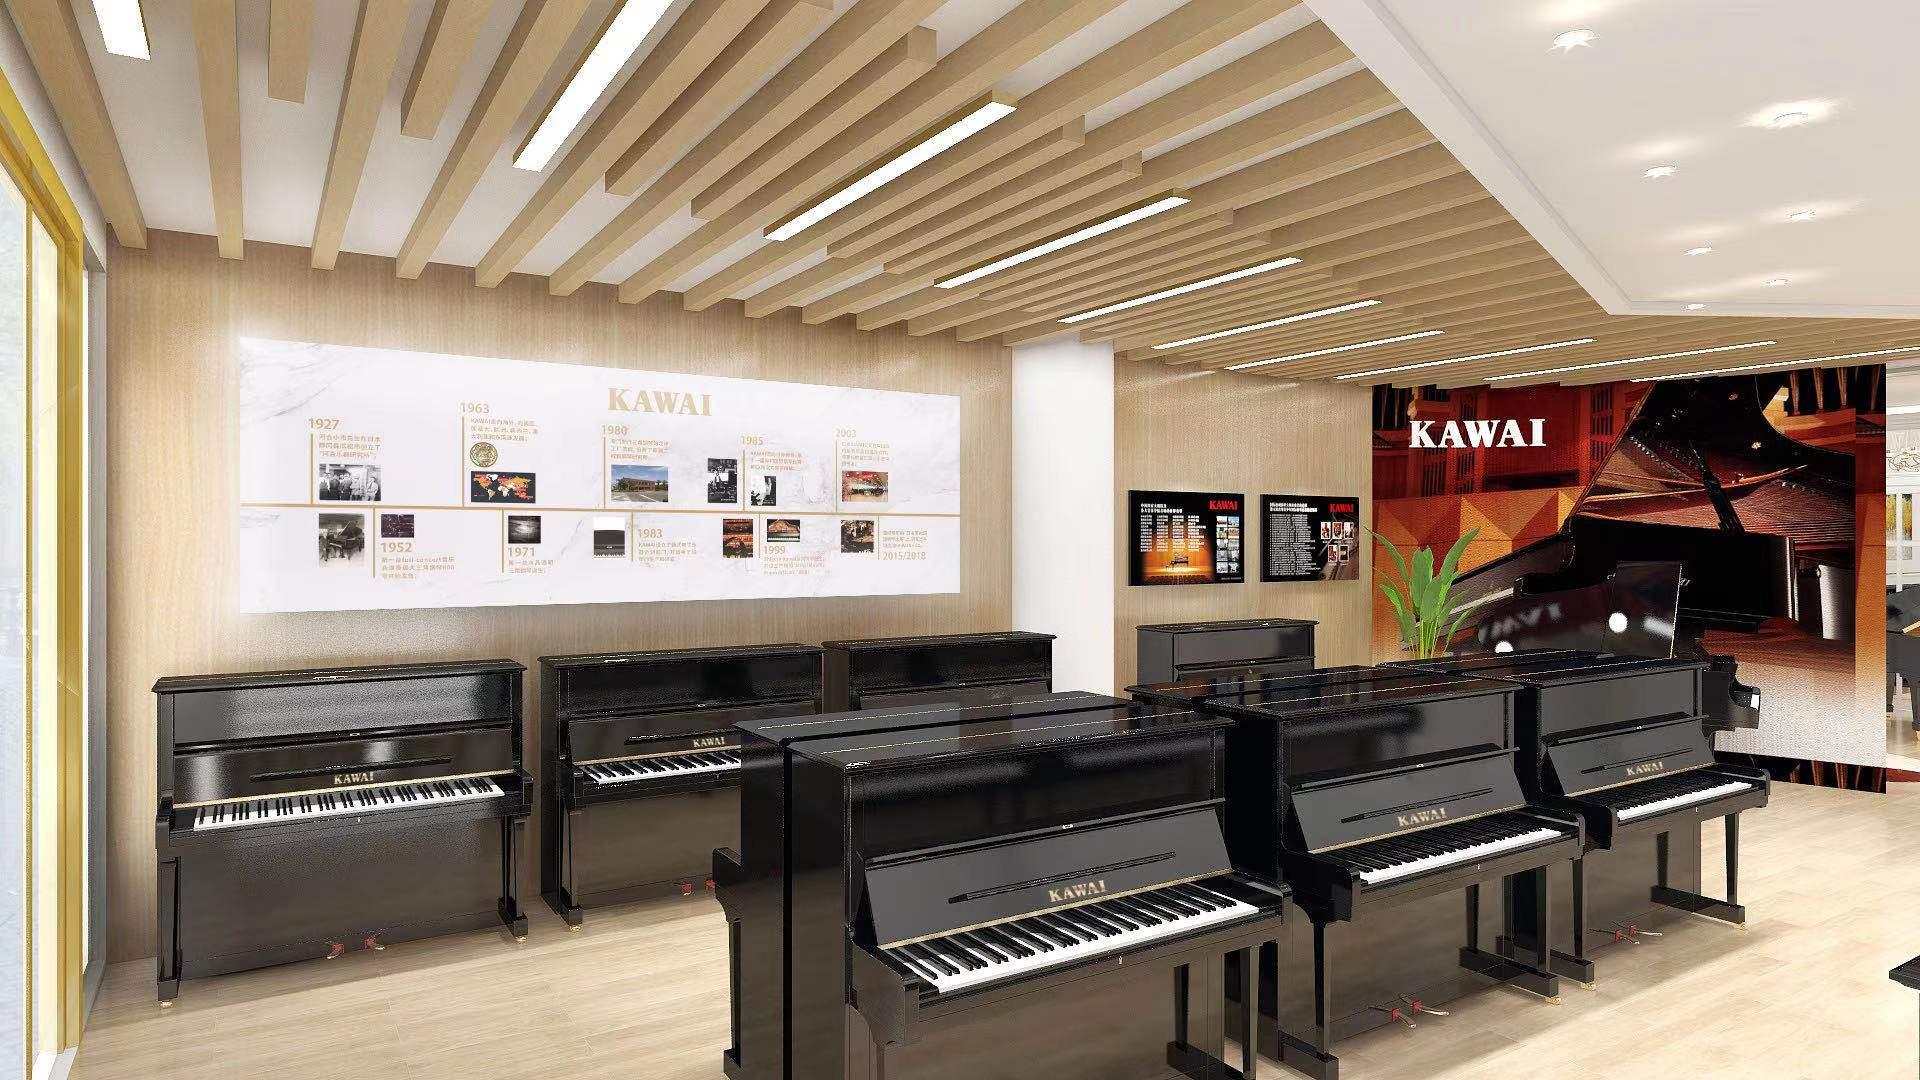 新店开业丨阜阳市区最大的钢琴专卖店kawai卡瓦依钢琴阜阳专卖店盛装